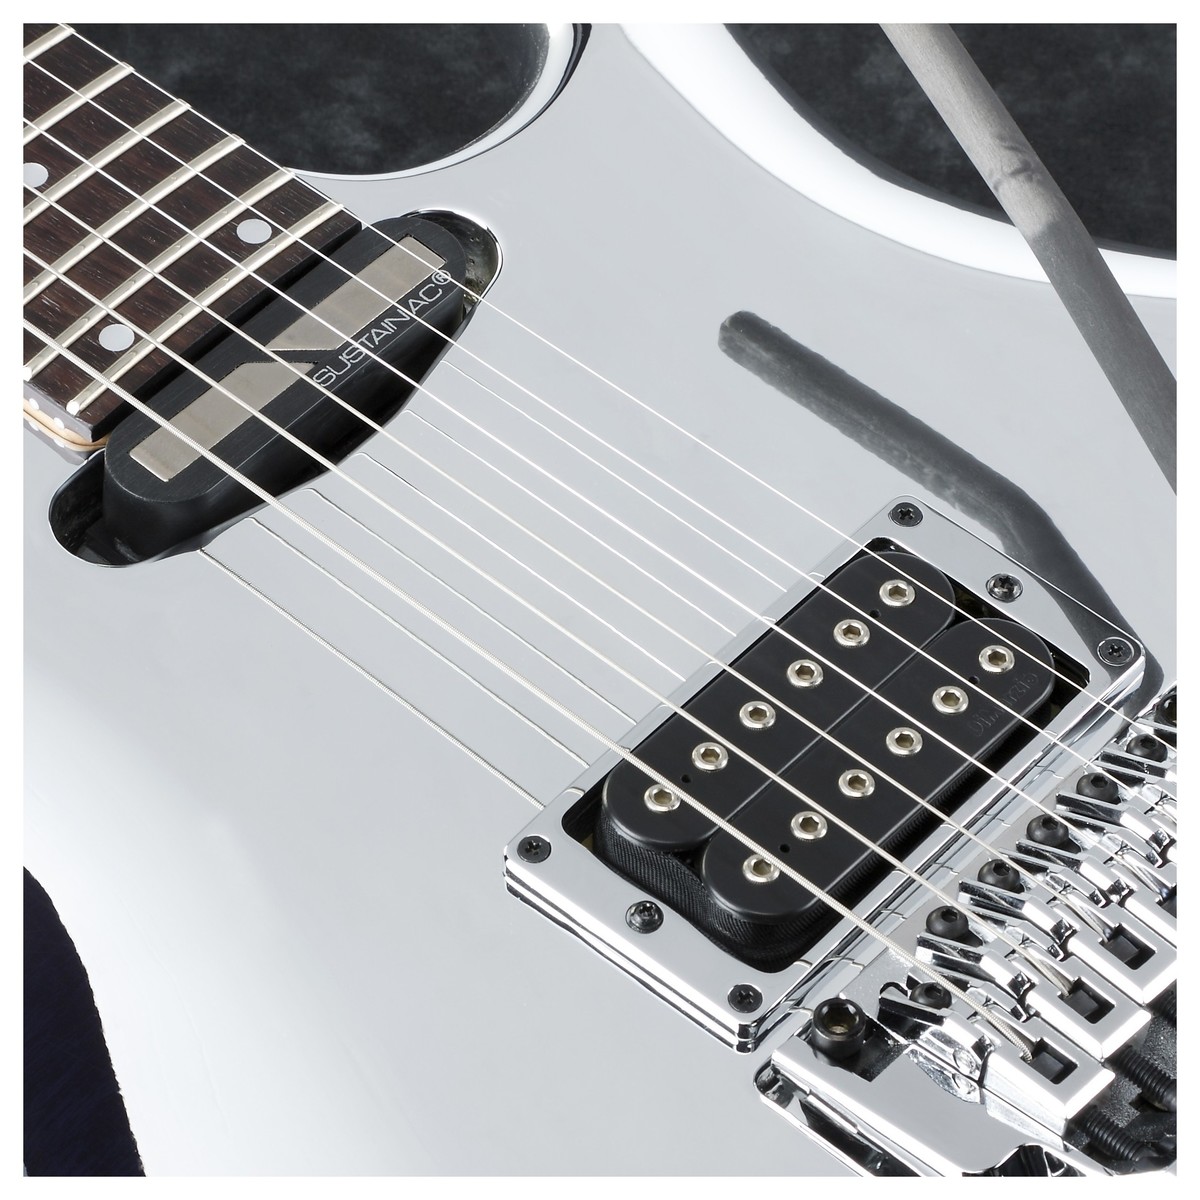 Ibanez Joe Satriani Js1cr Signature Japon H Sustainiac Fr Rw - Chrome Boy - Guitarra eléctrica de doble corte - Variation 2